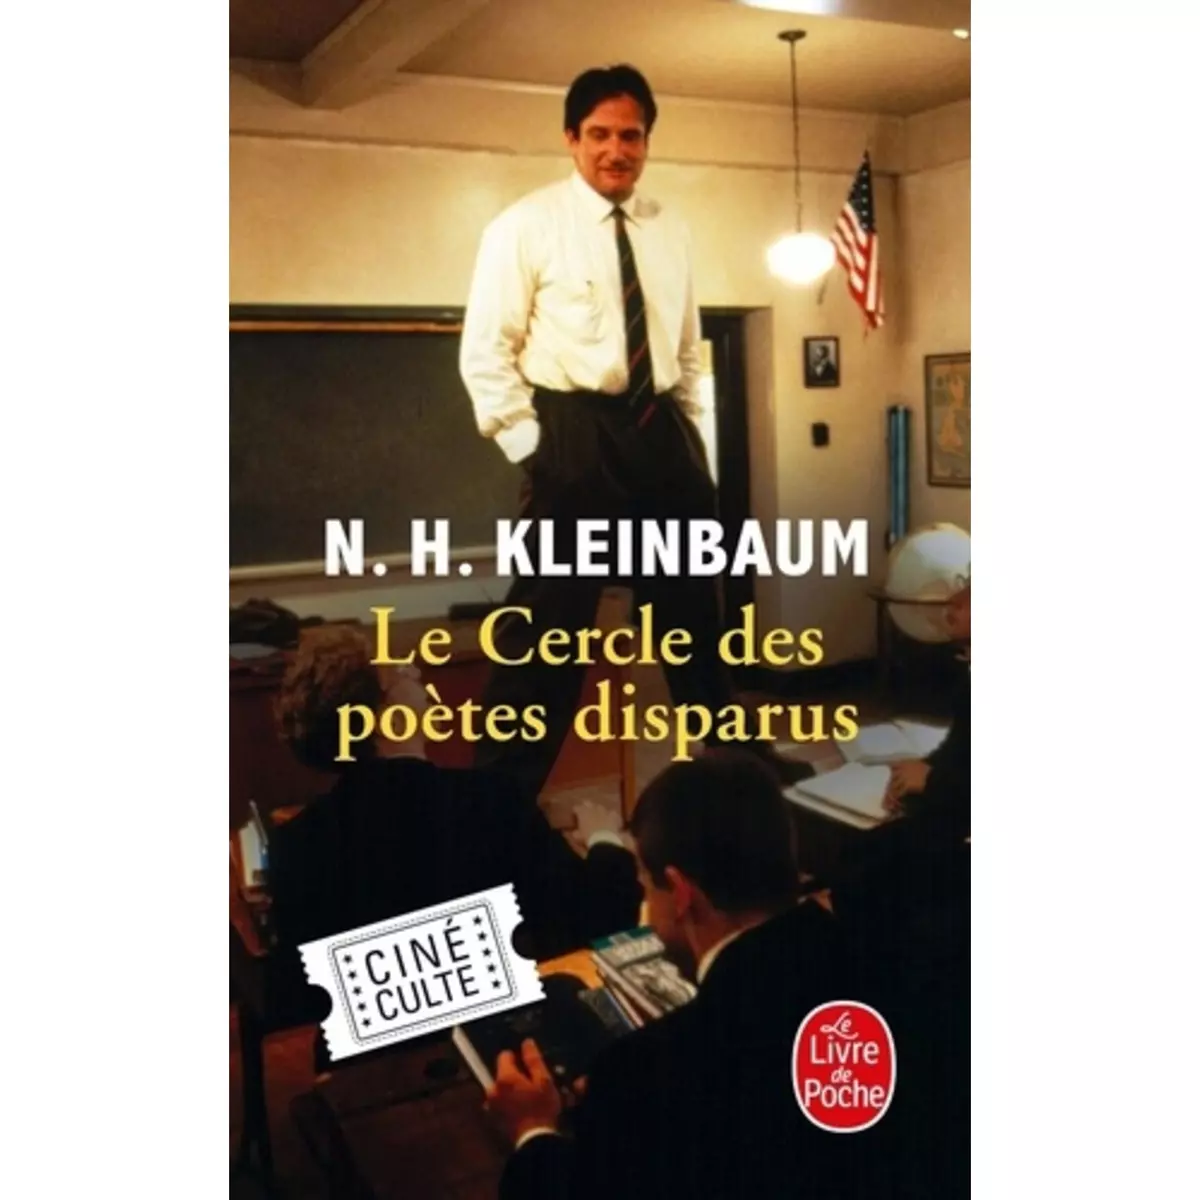  LE CERCLE DES POETES DISPARUS, Kleinbaum N. H.